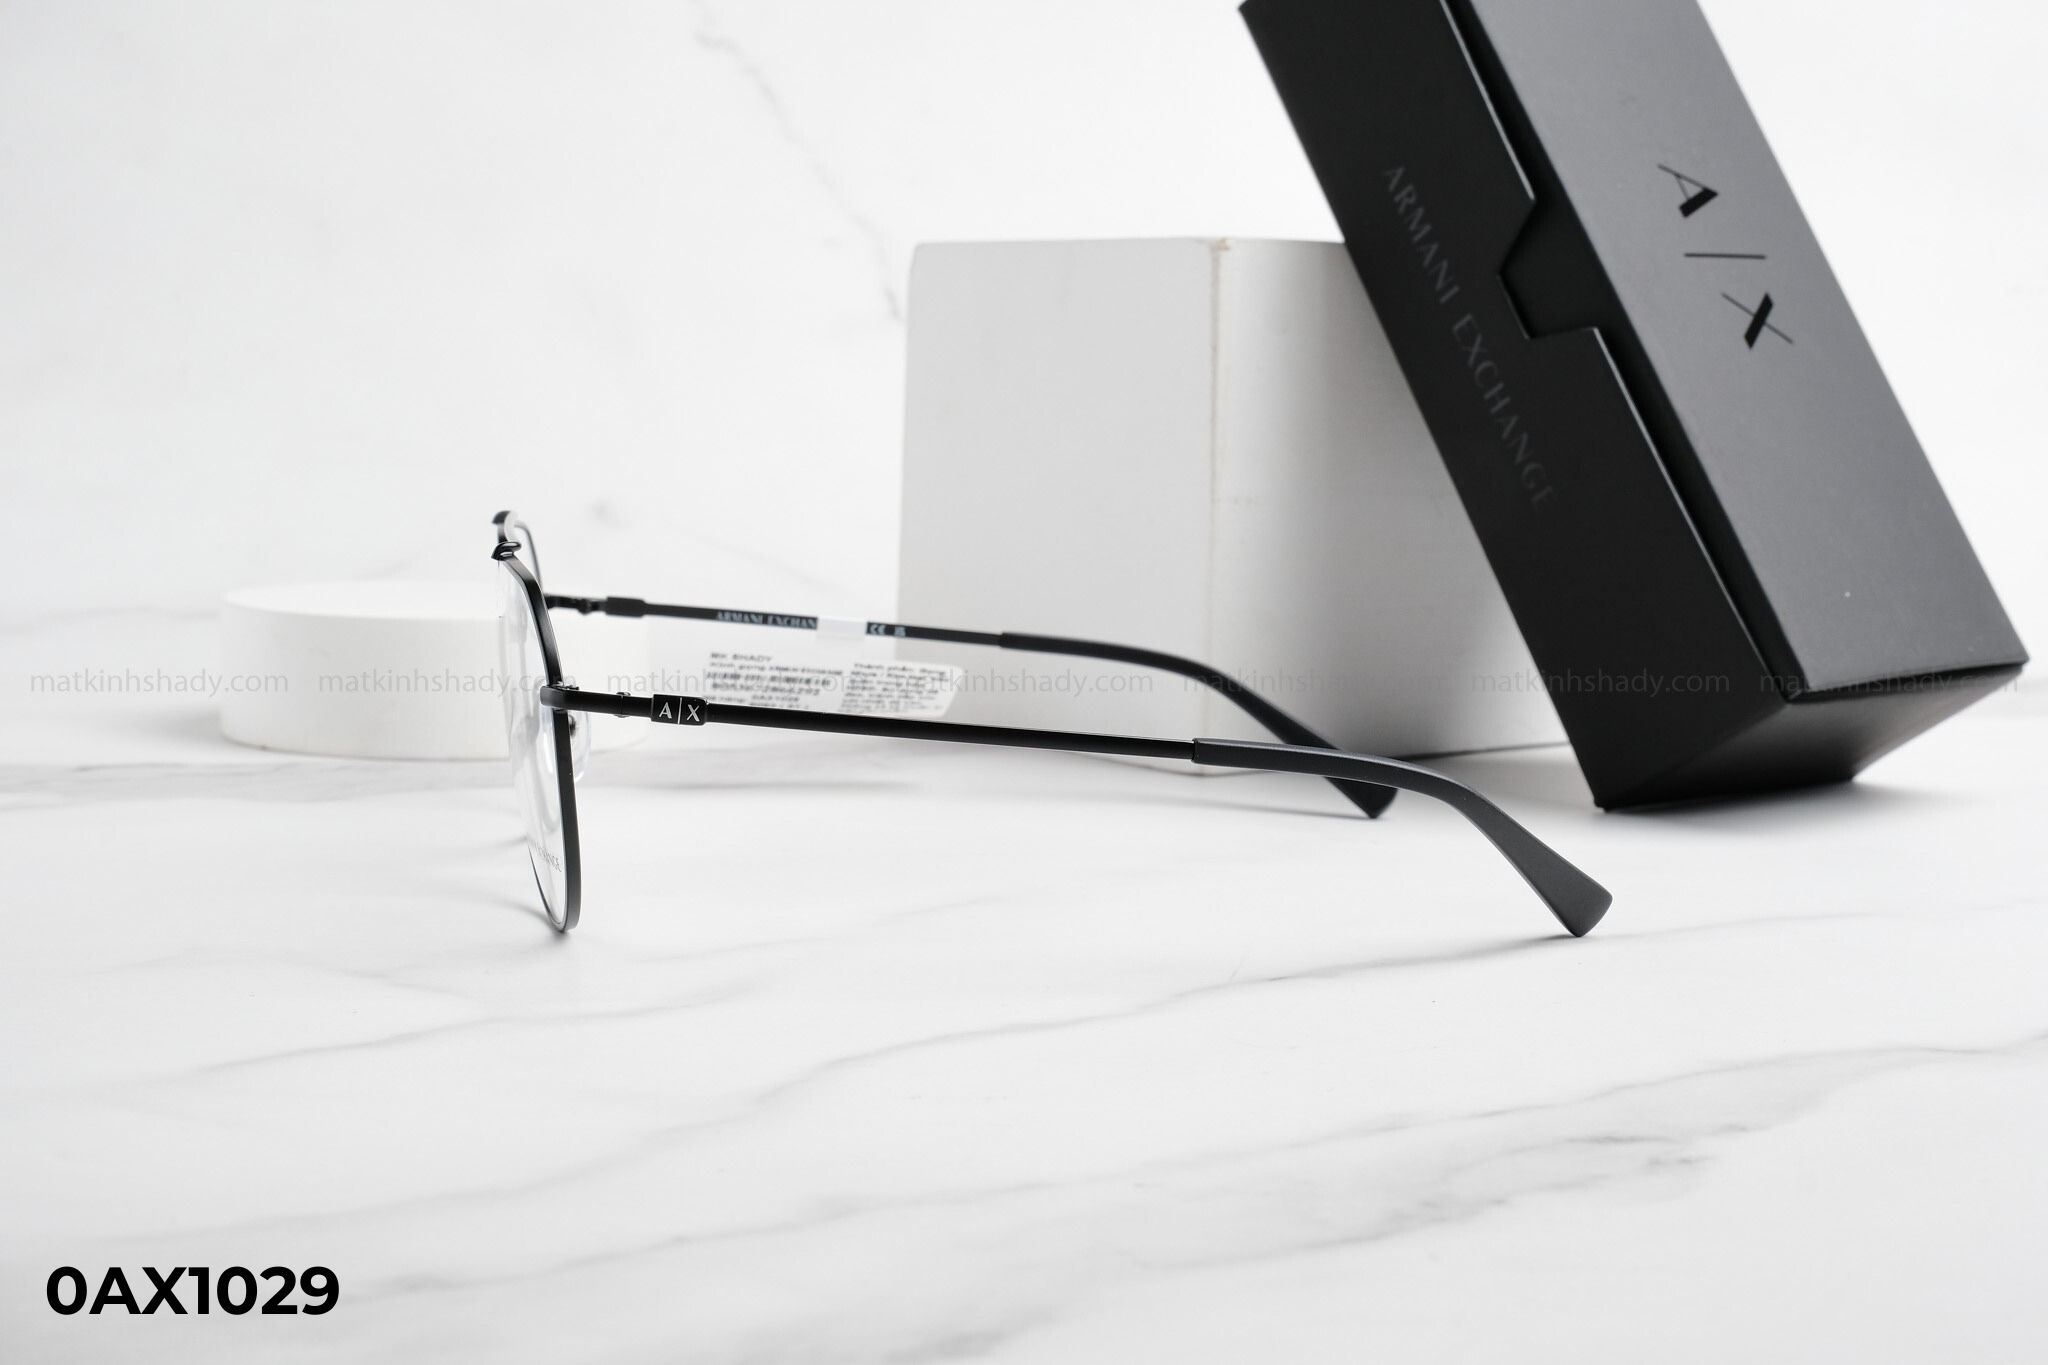  Armani Exchange Eyewear - Glasses - 0AX1029 